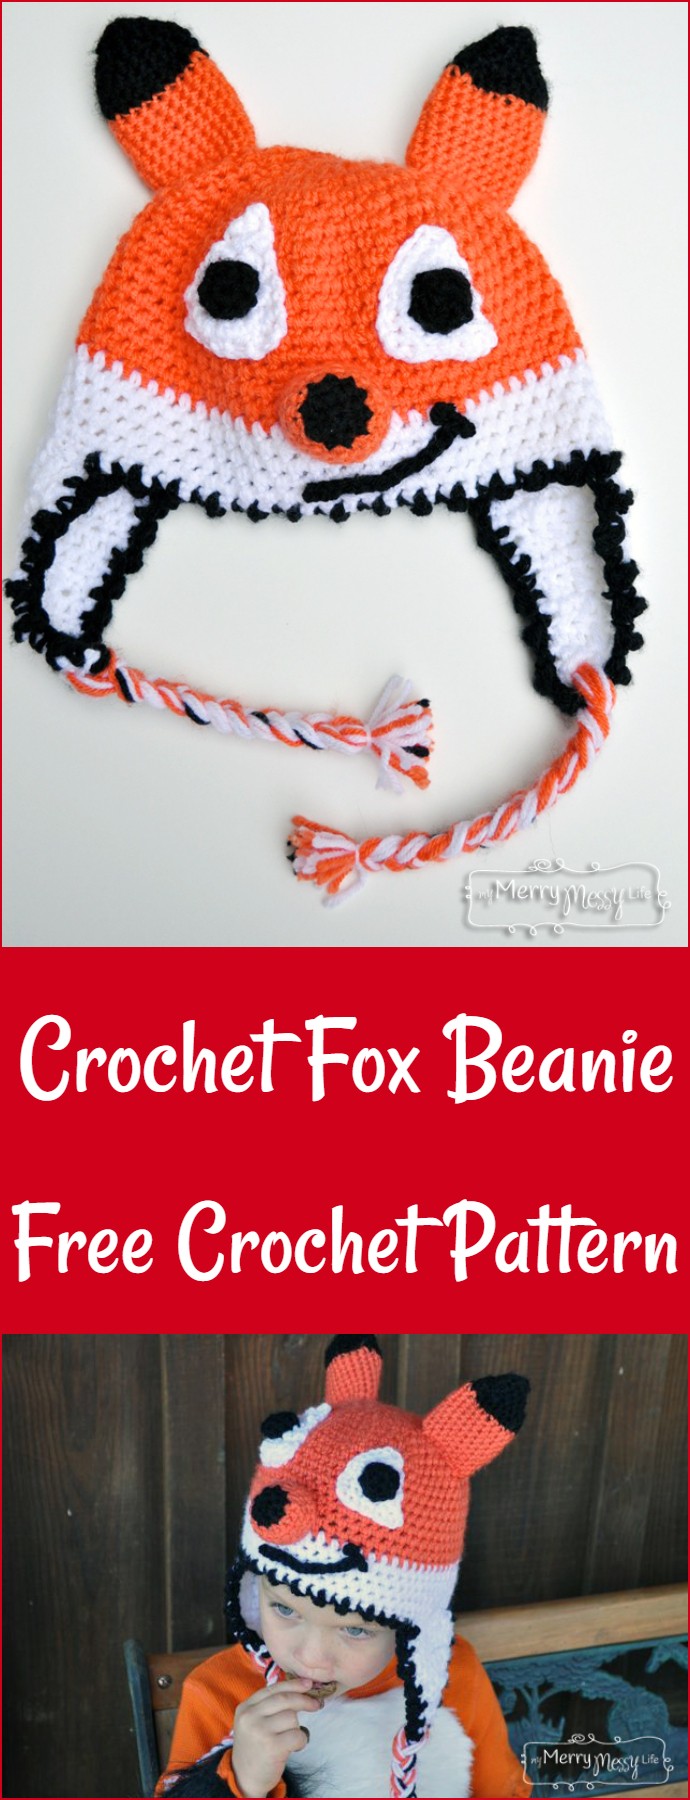 Crochet Fox Beanie Free Crochet Pattern